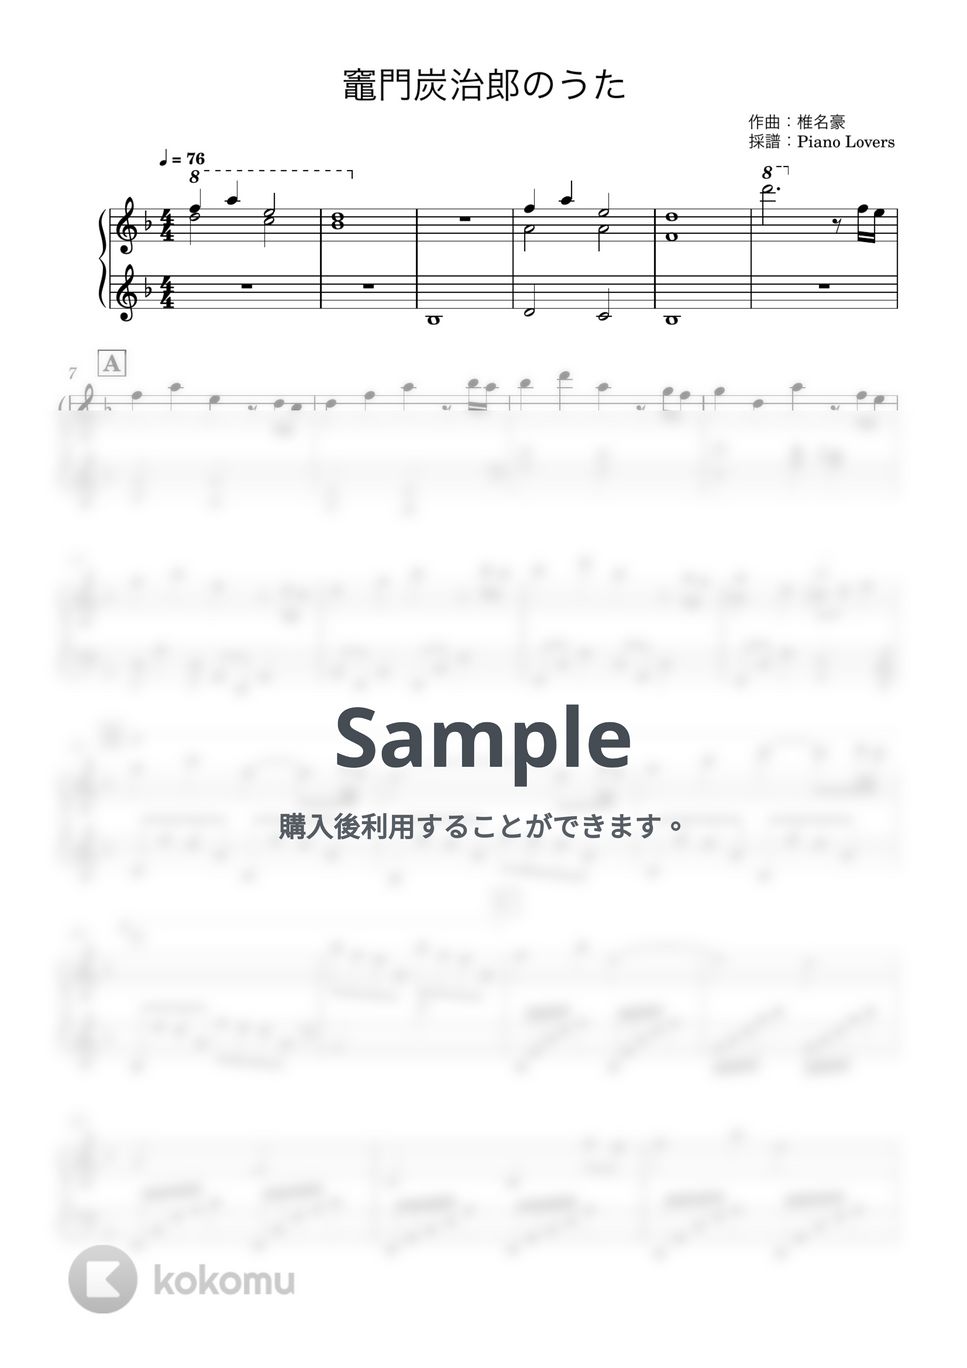 椎名豪 featuring 中川奈美 - 竈門炭治郎のうた (鬼滅の刃 / ピアノ楽譜 / 初級) by Piano Lovers. jp